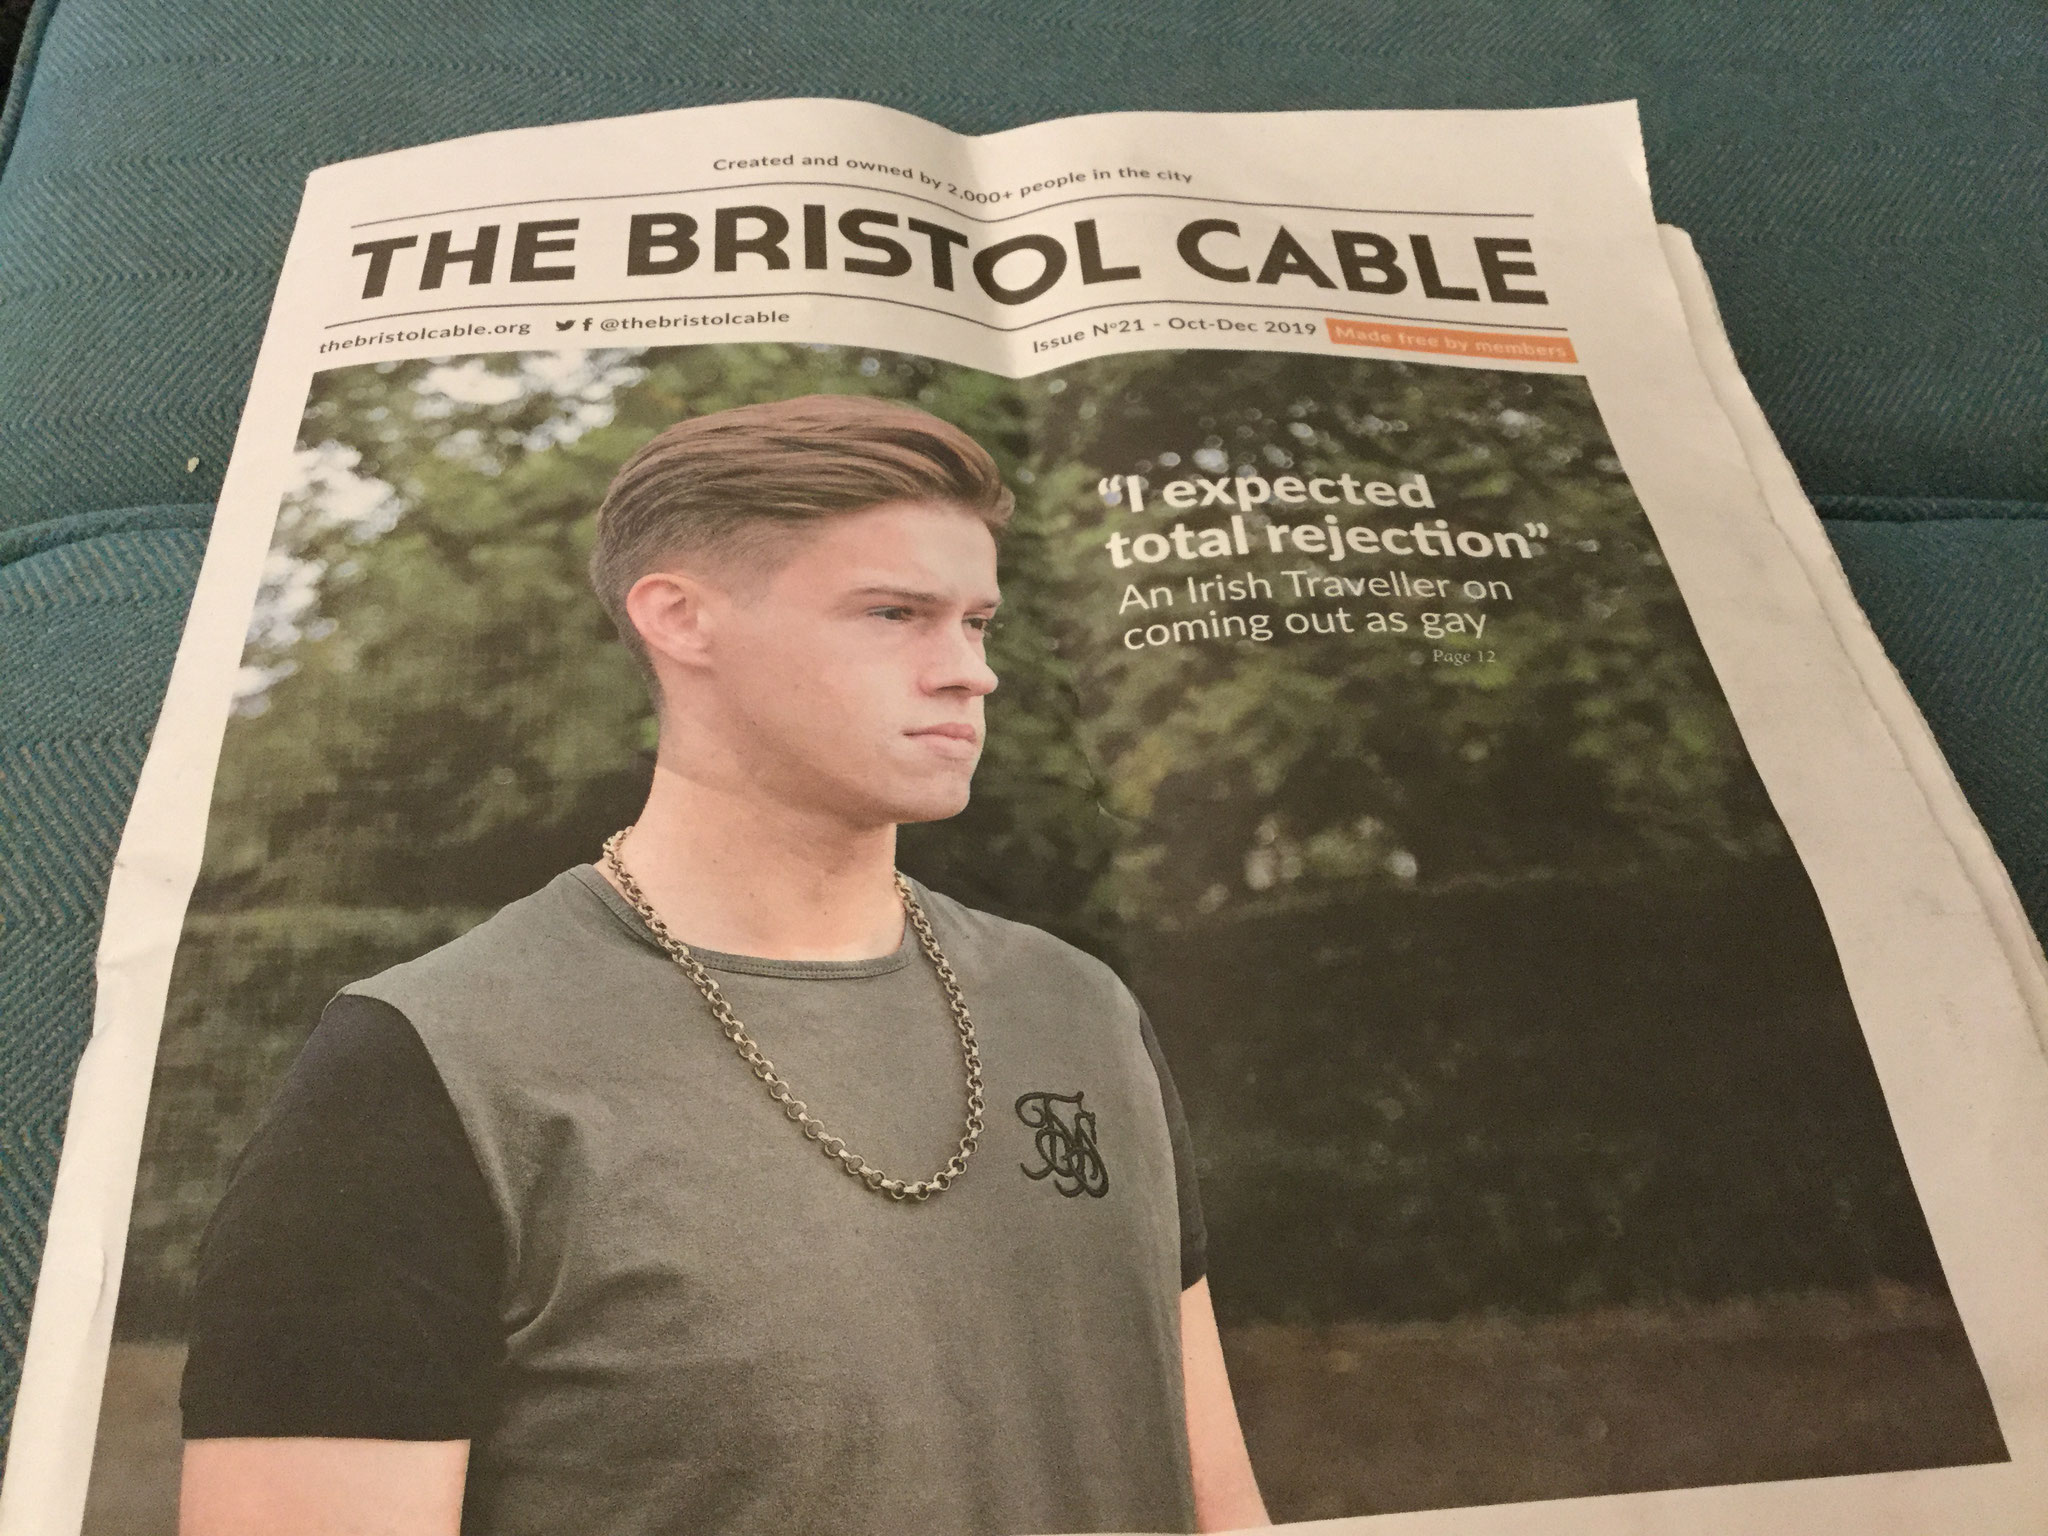 The Bristol Cable - eine Lokalzeitung mit Genossenschaftsmodell - und starken, gut recherchierten Artikeln